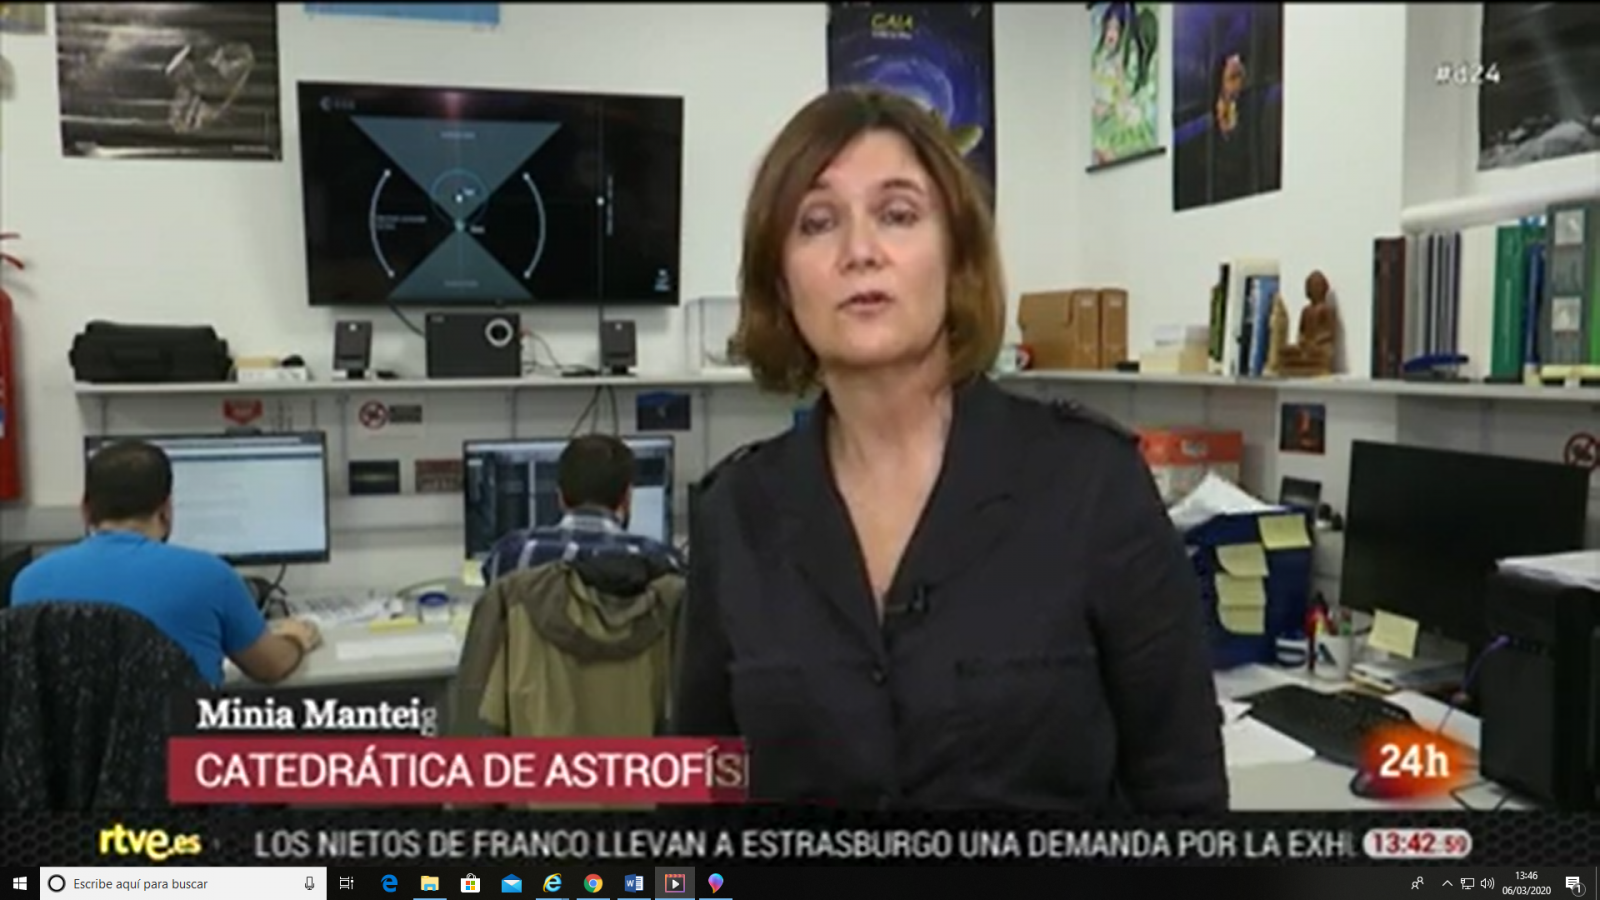 Minia Manteiga, referente de la astrofísica en Galicia